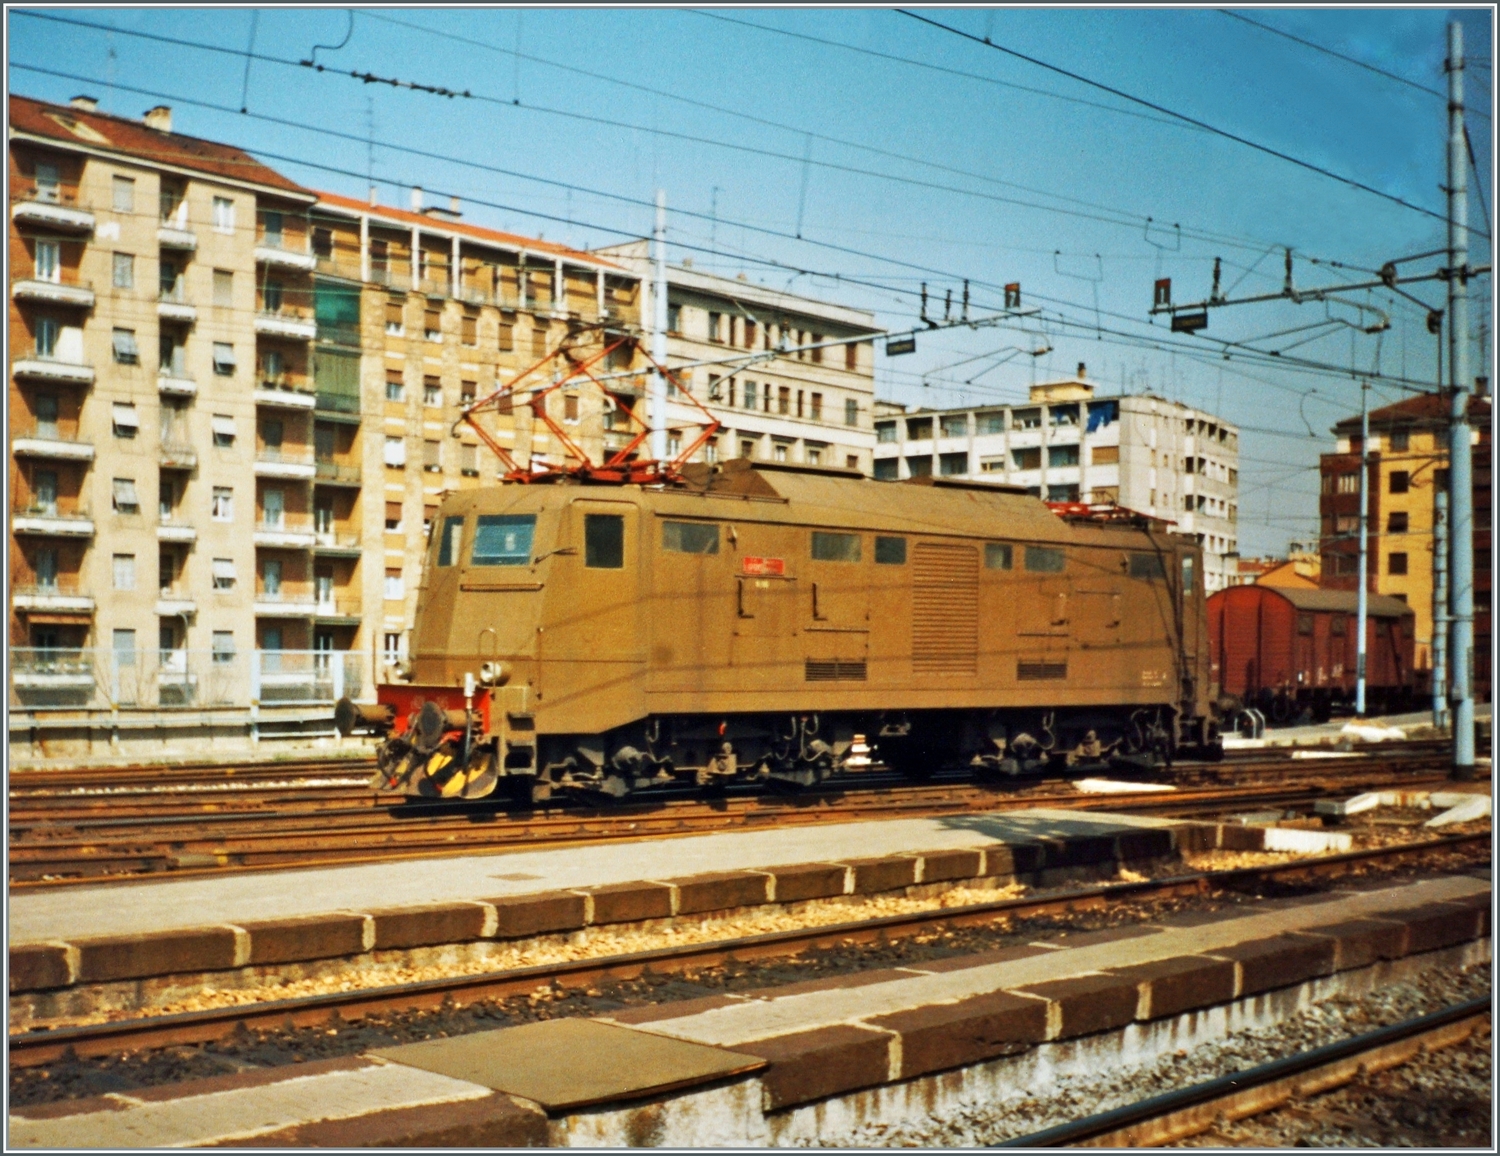 Eine nummernmässig nicht zu erkennende FS Trenitalia E 424 ist in Milano auf einer Rangierfahrt. 

Analogbild vom März 1993